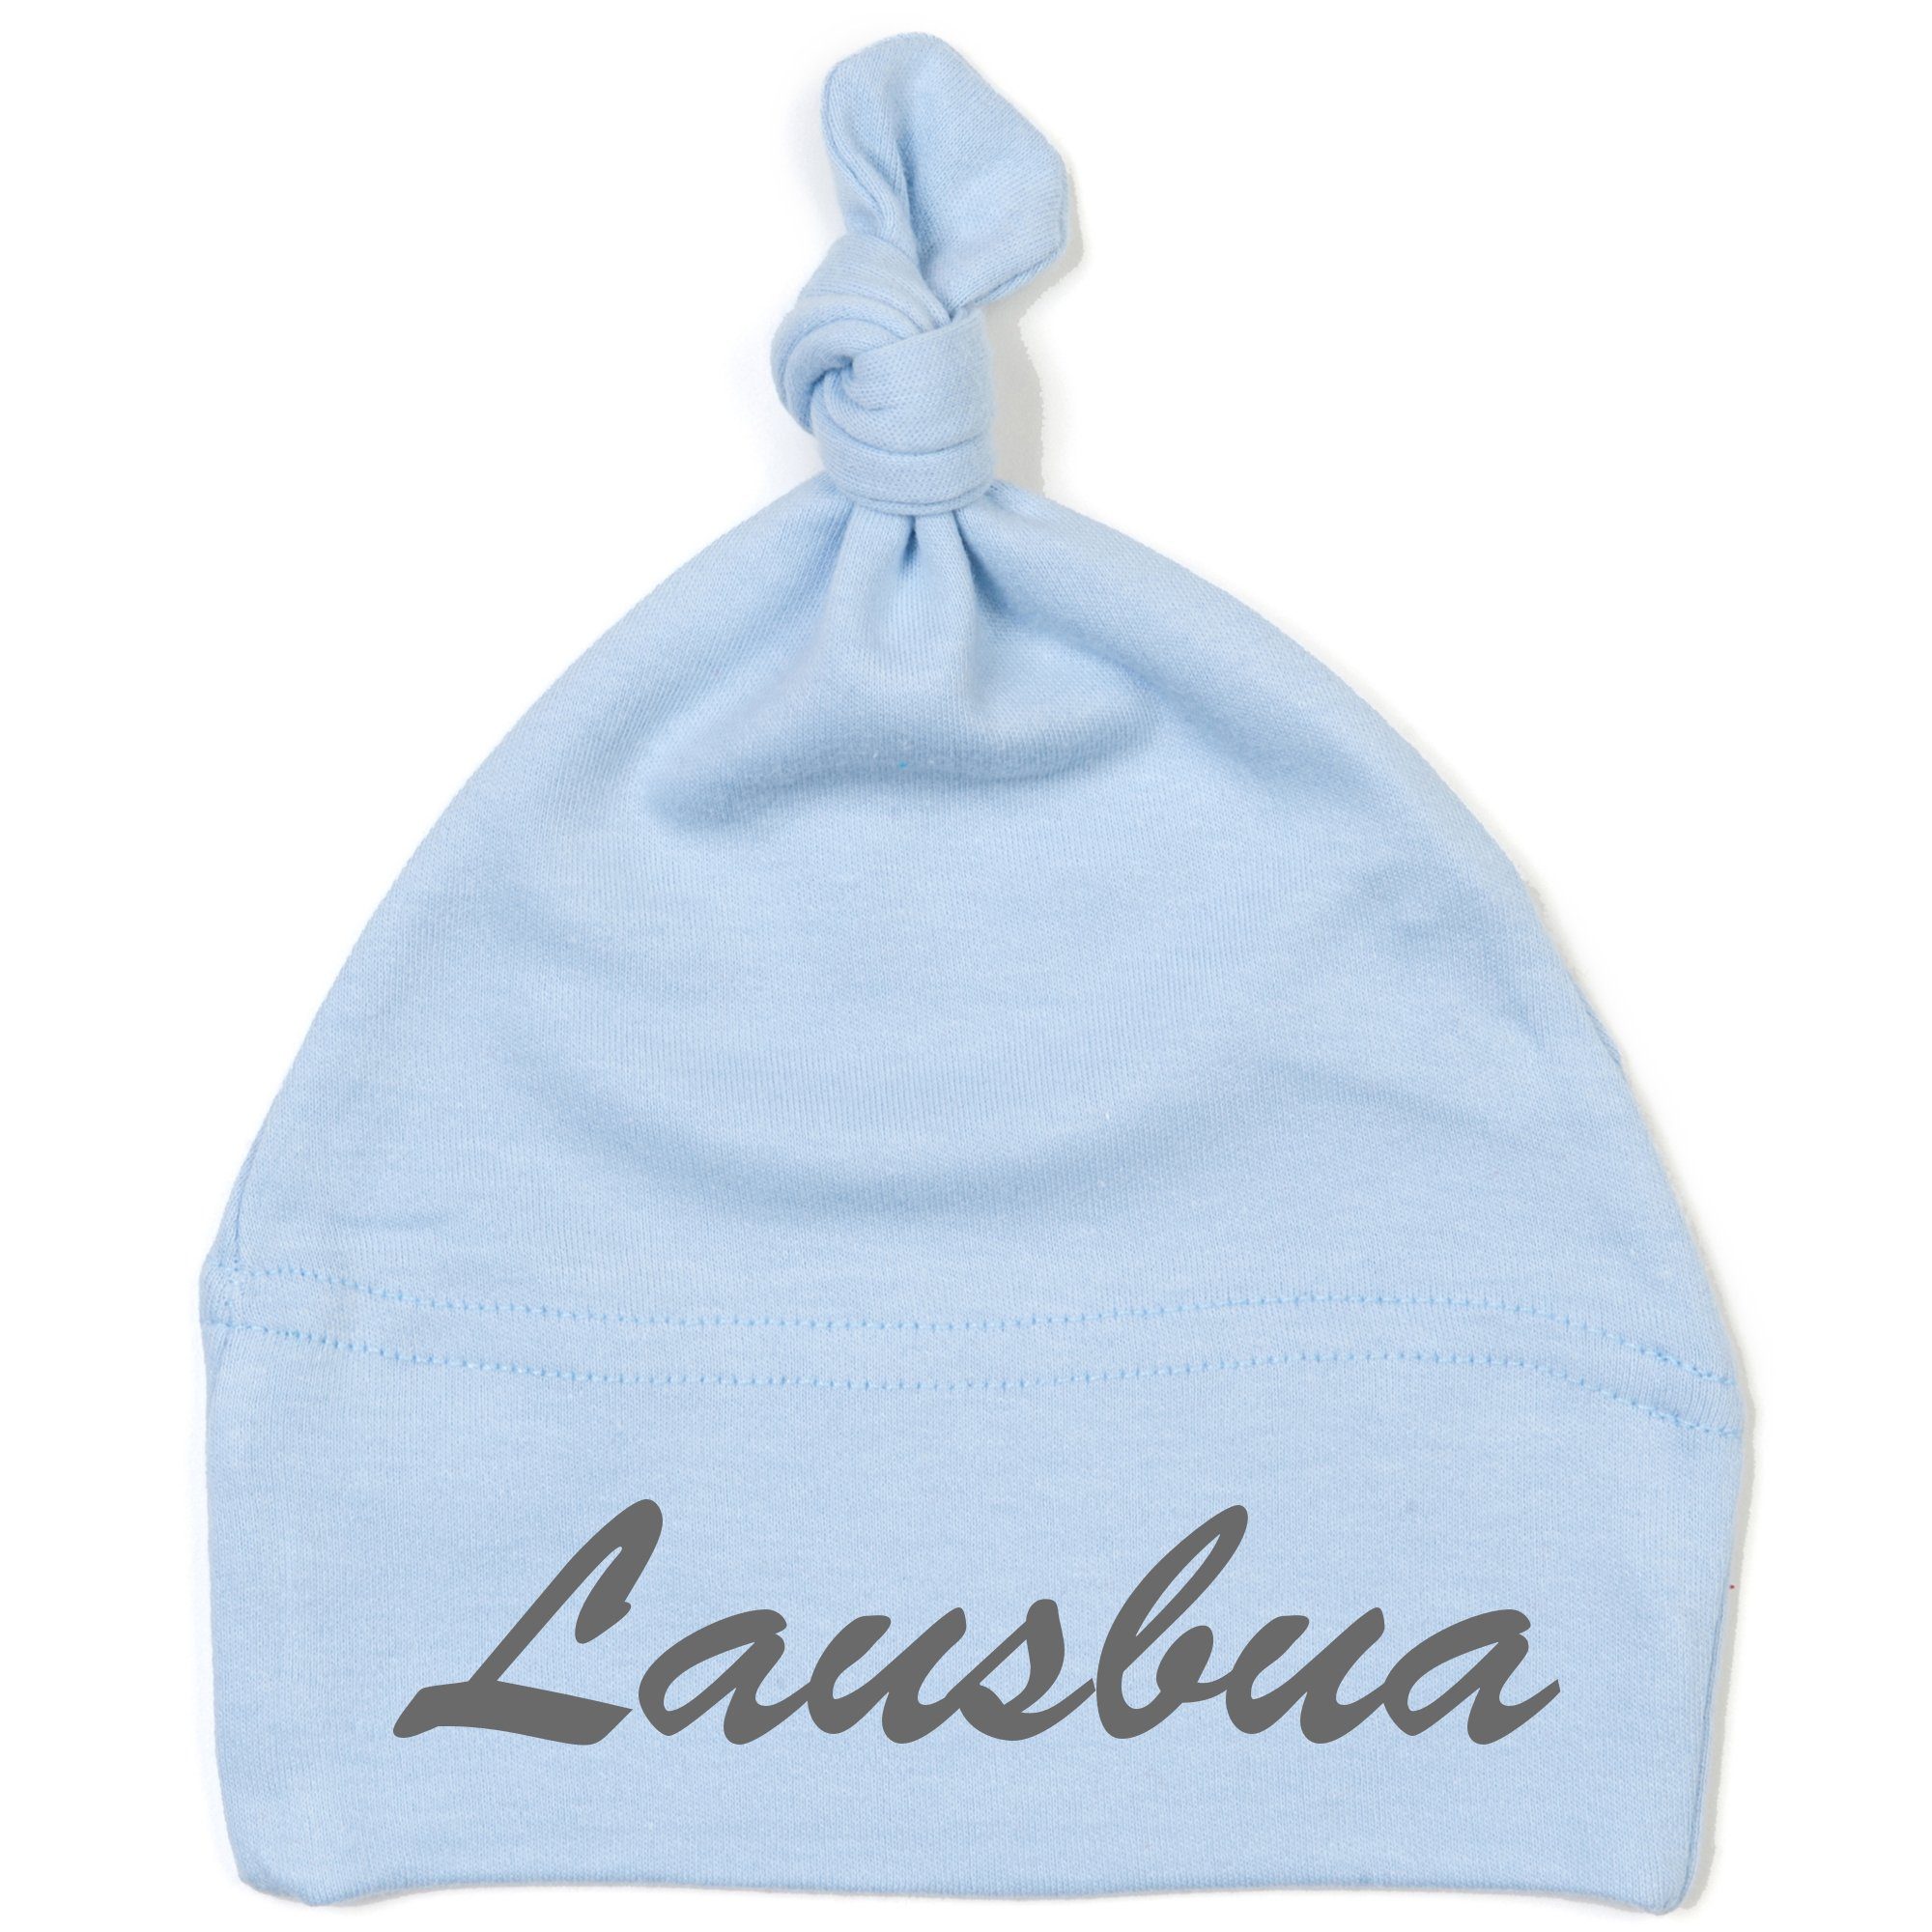 Schnoschi Erstlingsmütze Babymütze mit Knoten und mit Lausbua hochwertig bestickt / gestickt Stickerei mit Lausbua hellblau